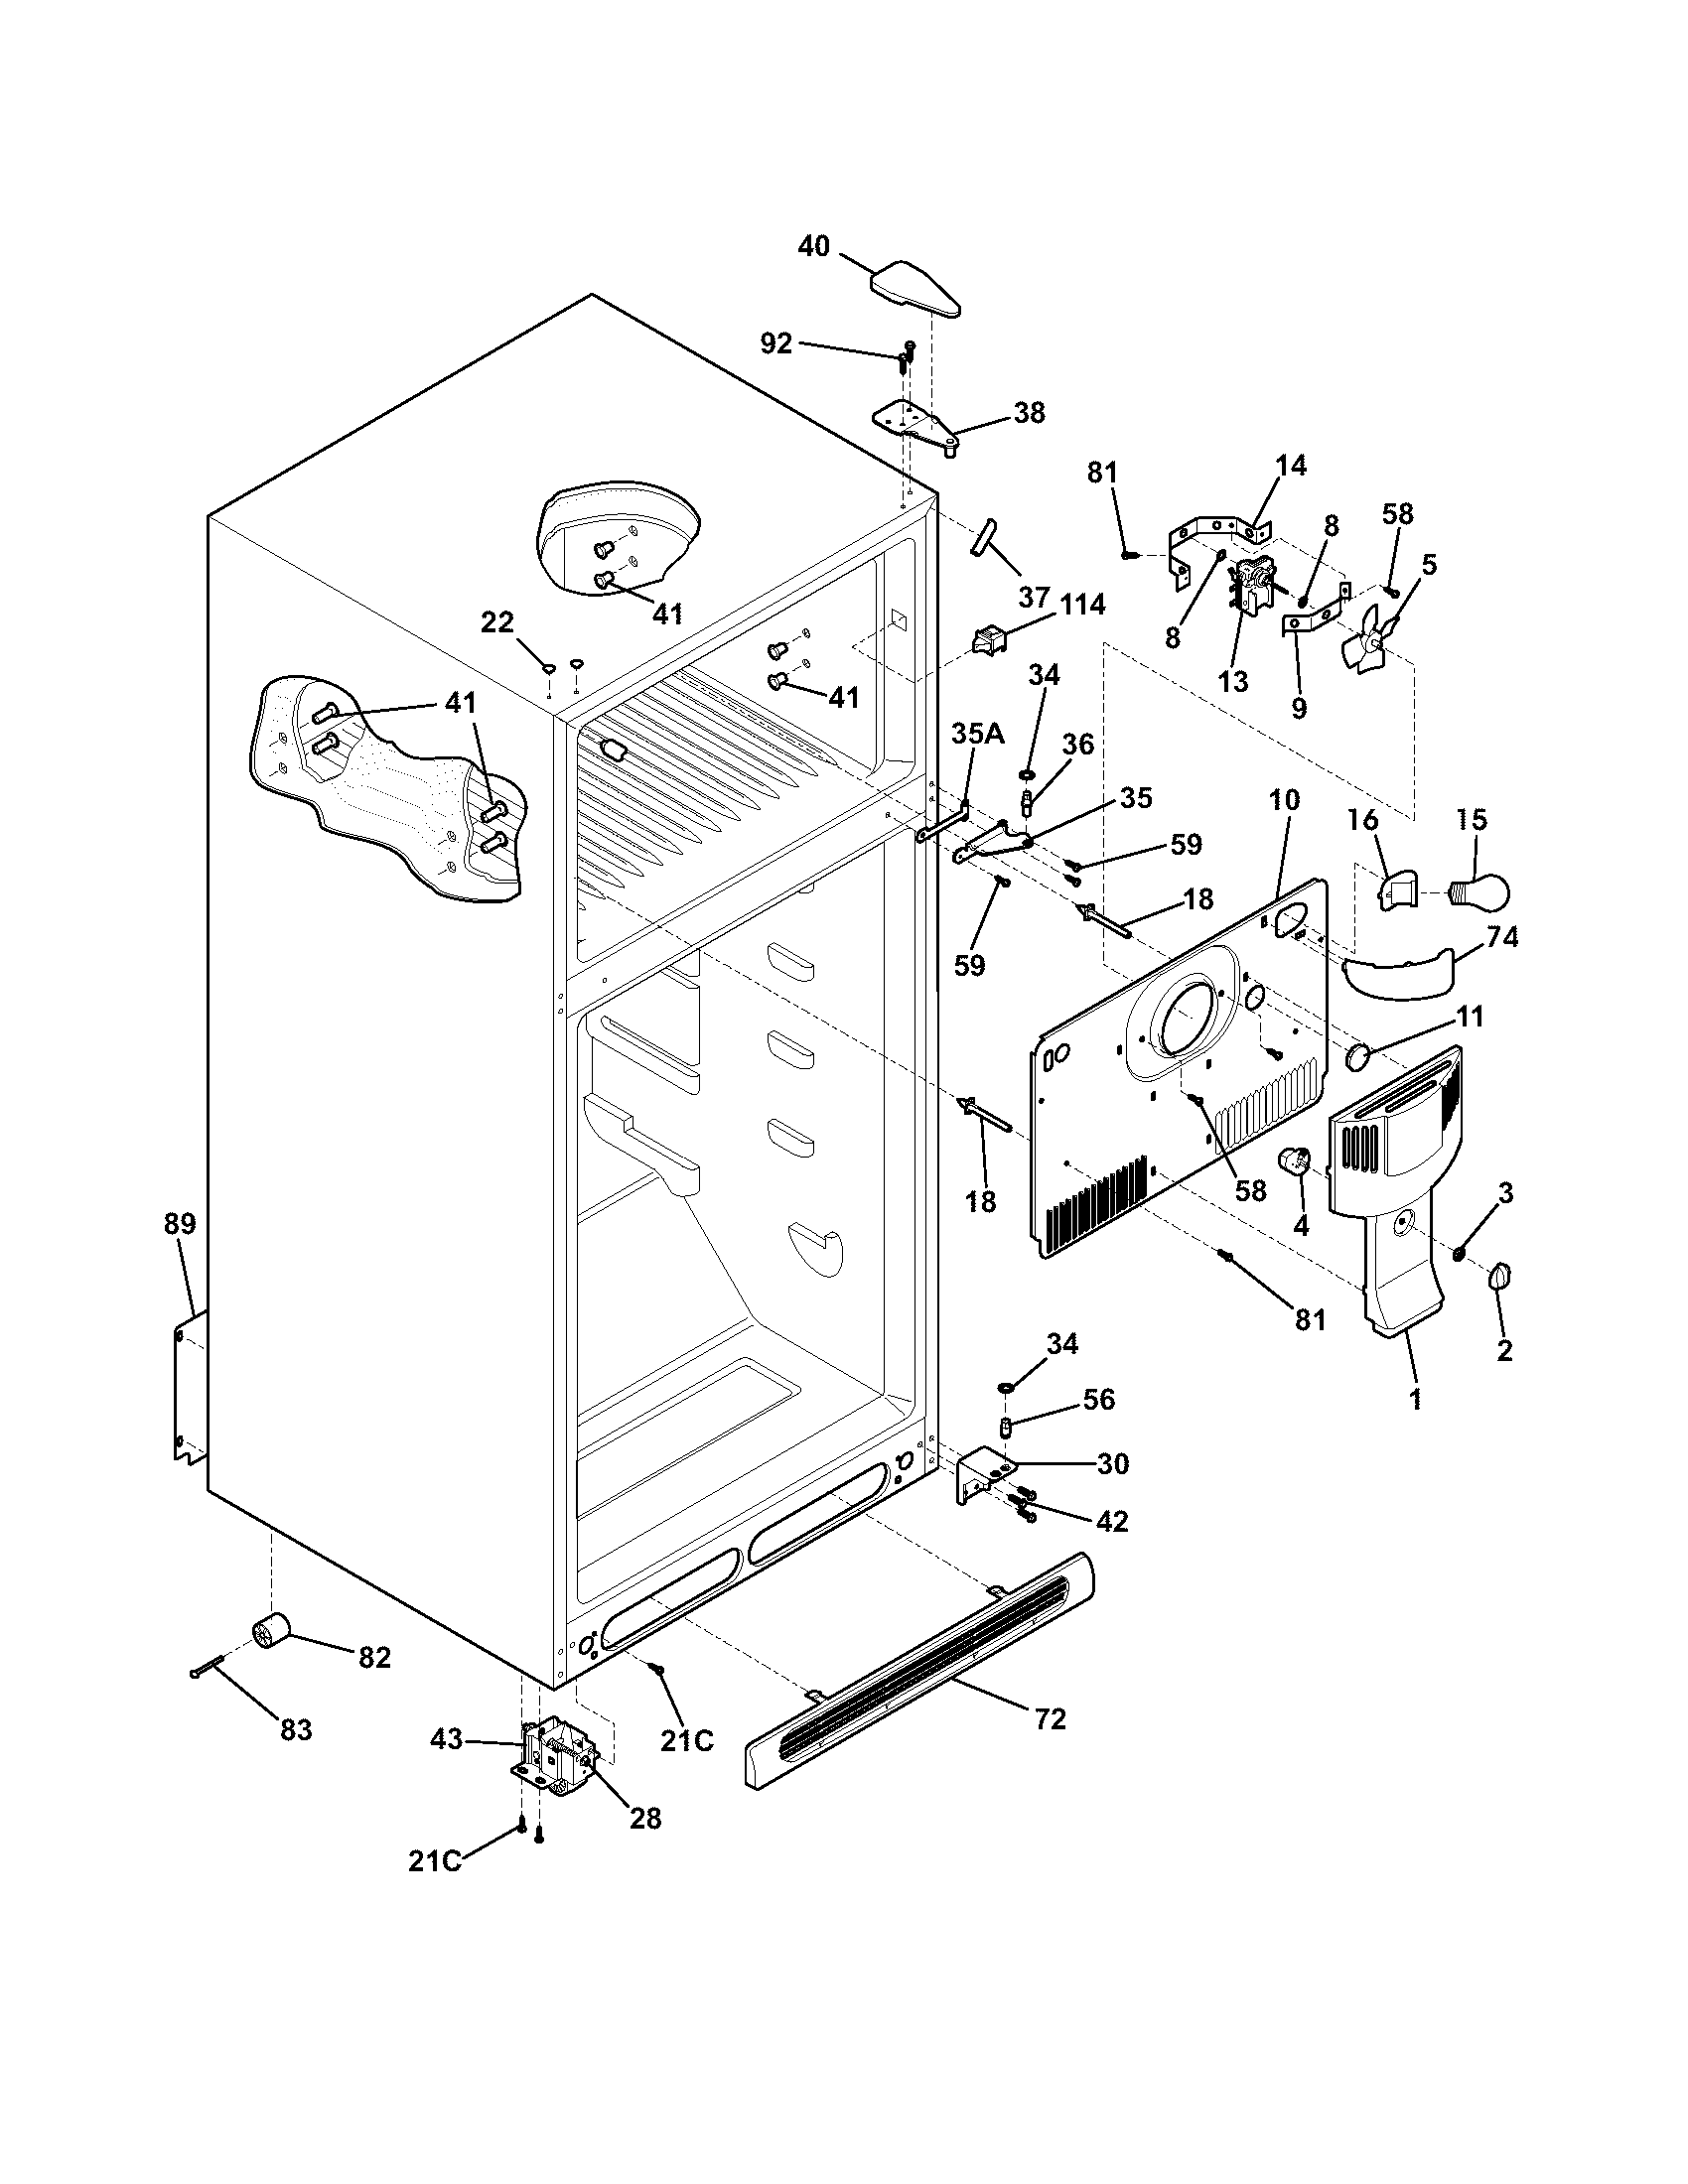 Manual For Frigidaire Gallery Refrigerator